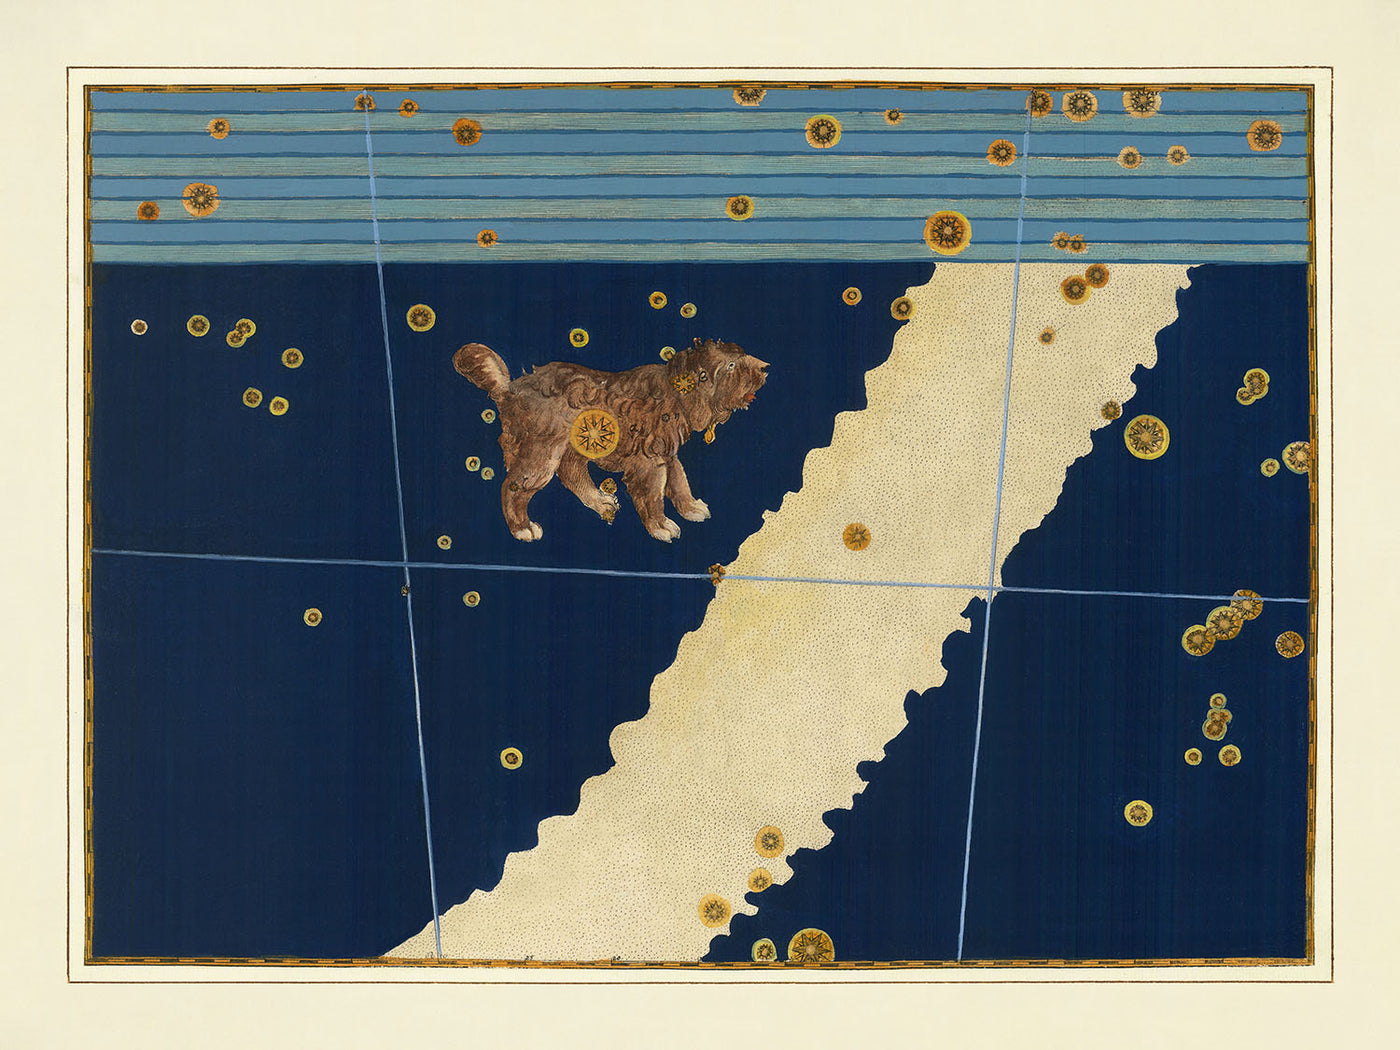 Alte Sternenkarte des Kleinen Hundes von Johann Bayer, 1603